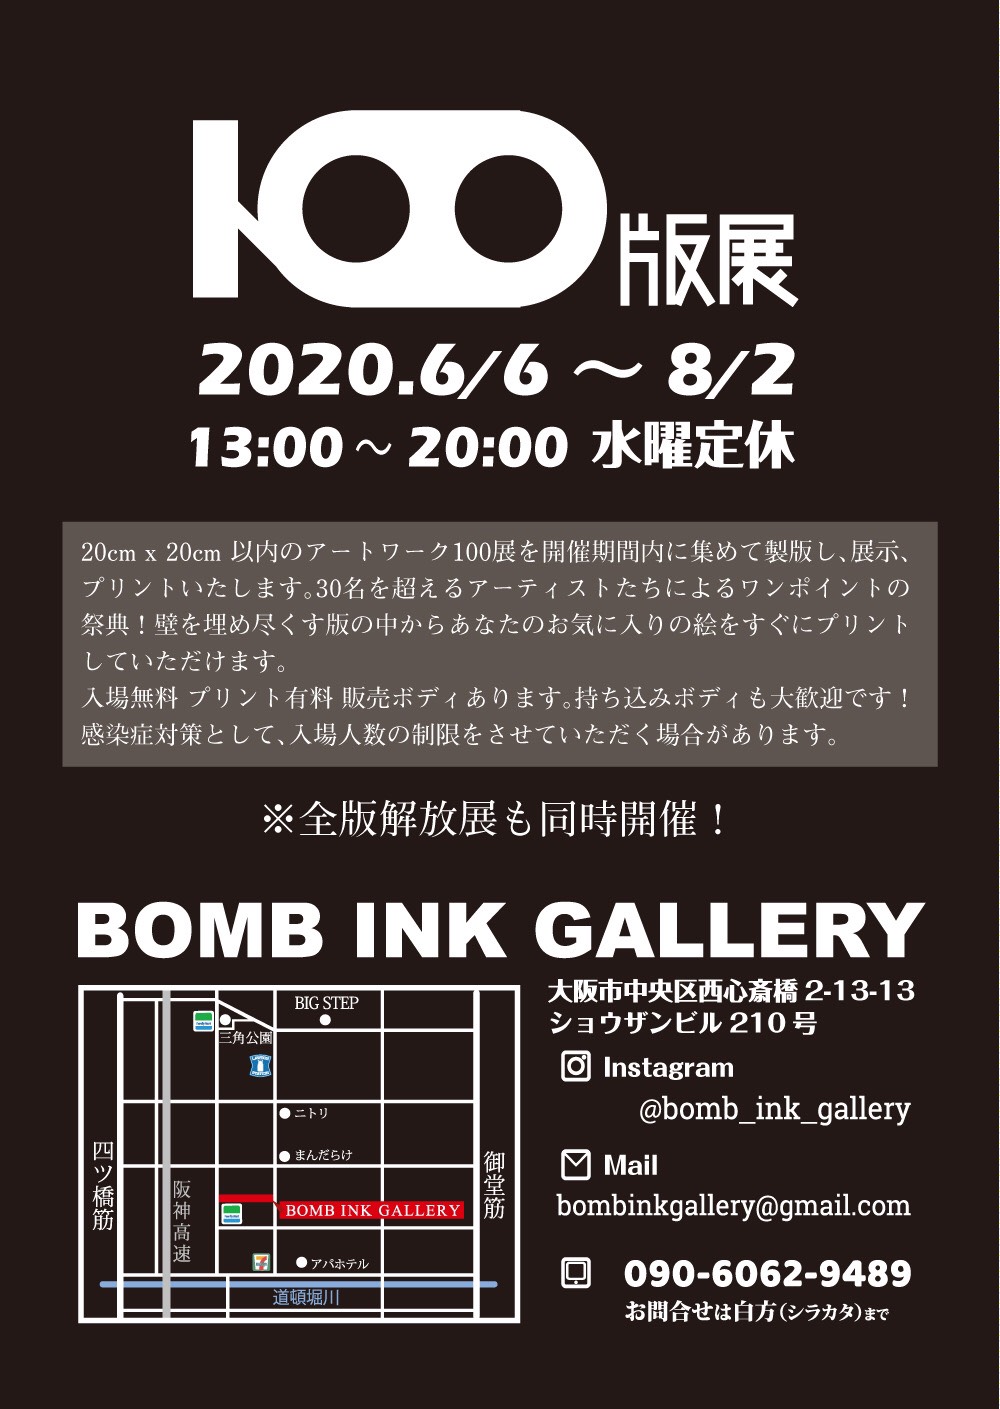 百版展@bomb ink gallery